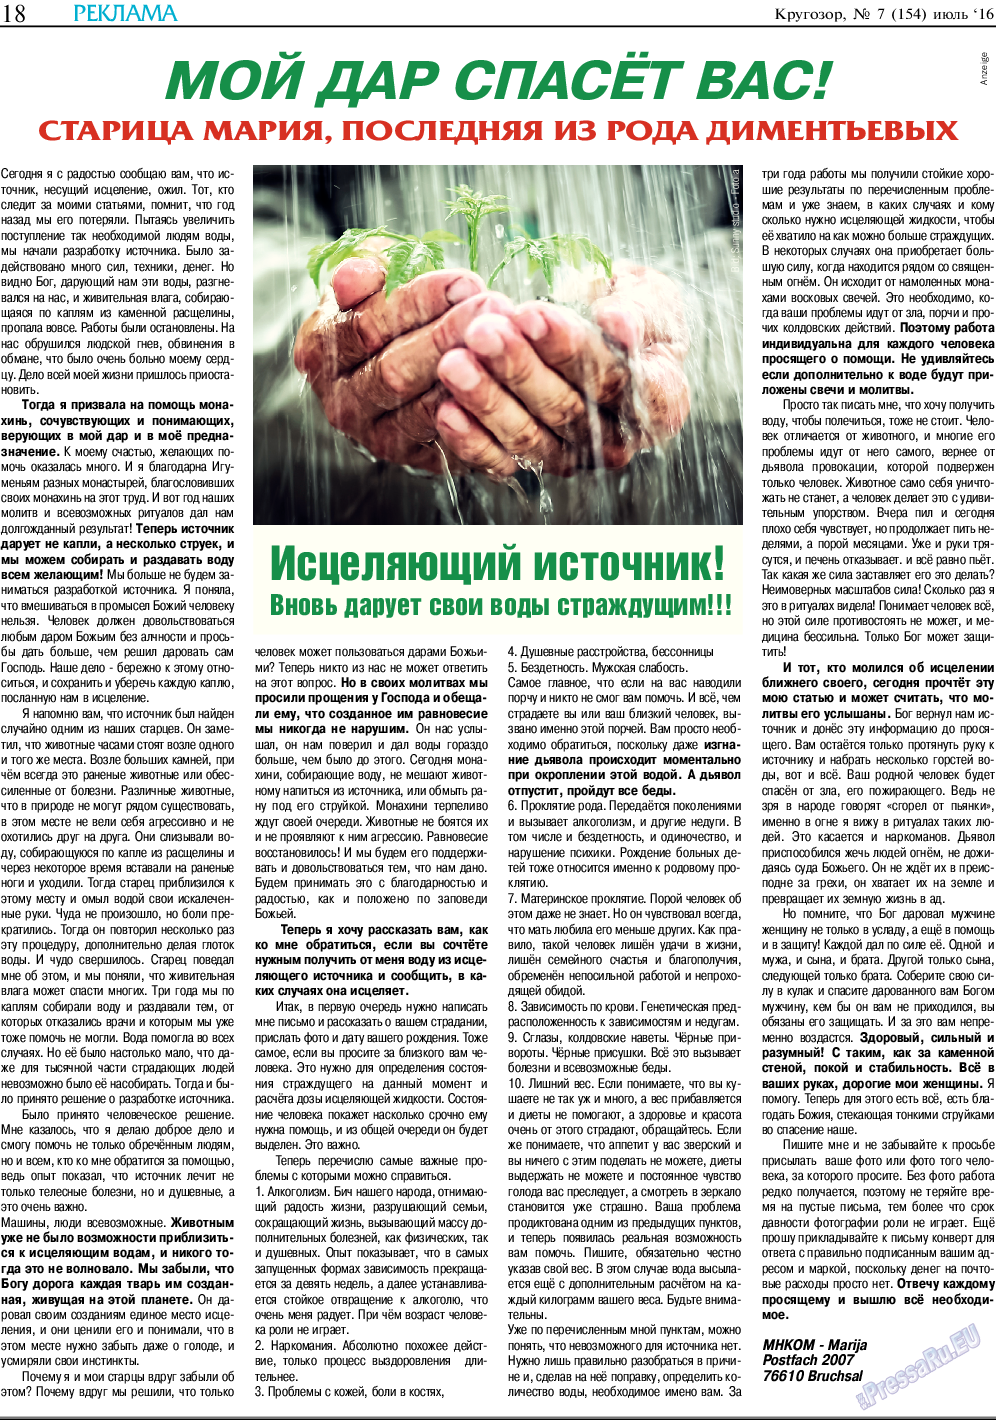 Кругозор (газета). 2016 год, номер 7, стр. 18